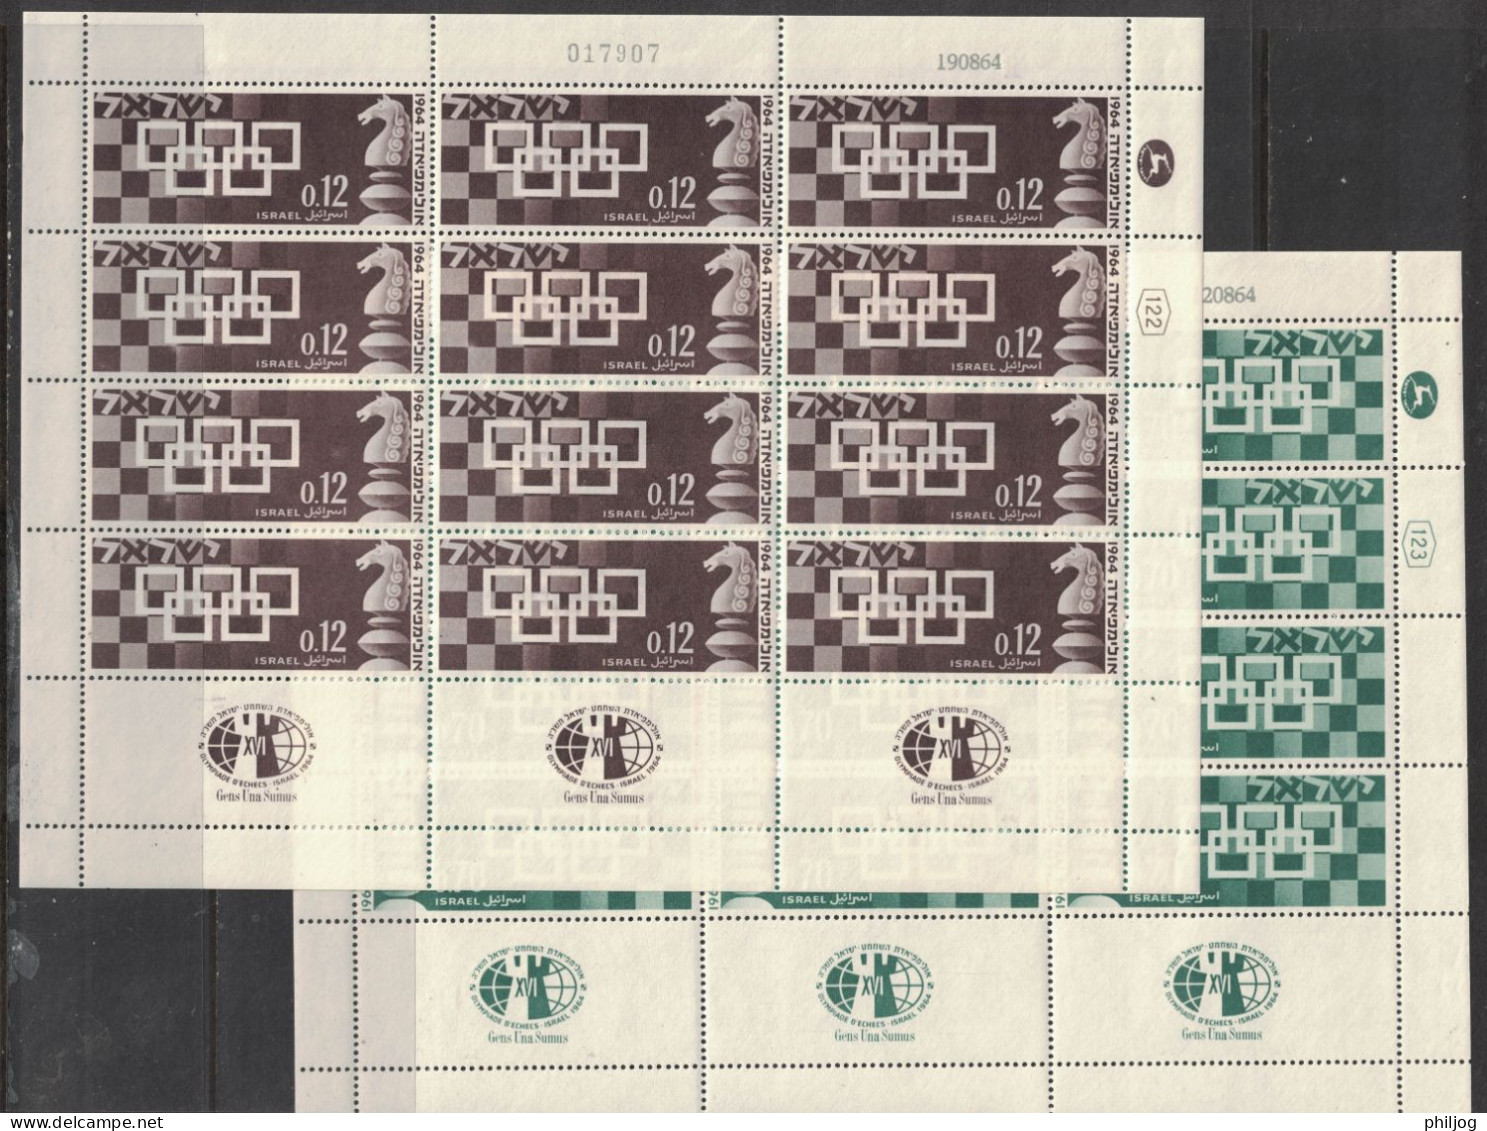 Israël 1964- Yvert 263-264, Scott#269-270, Bale 300-301 - Feuille Complète Neuve SANS Charnière - Echecs, Chess - Unused Stamps (with Tabs)